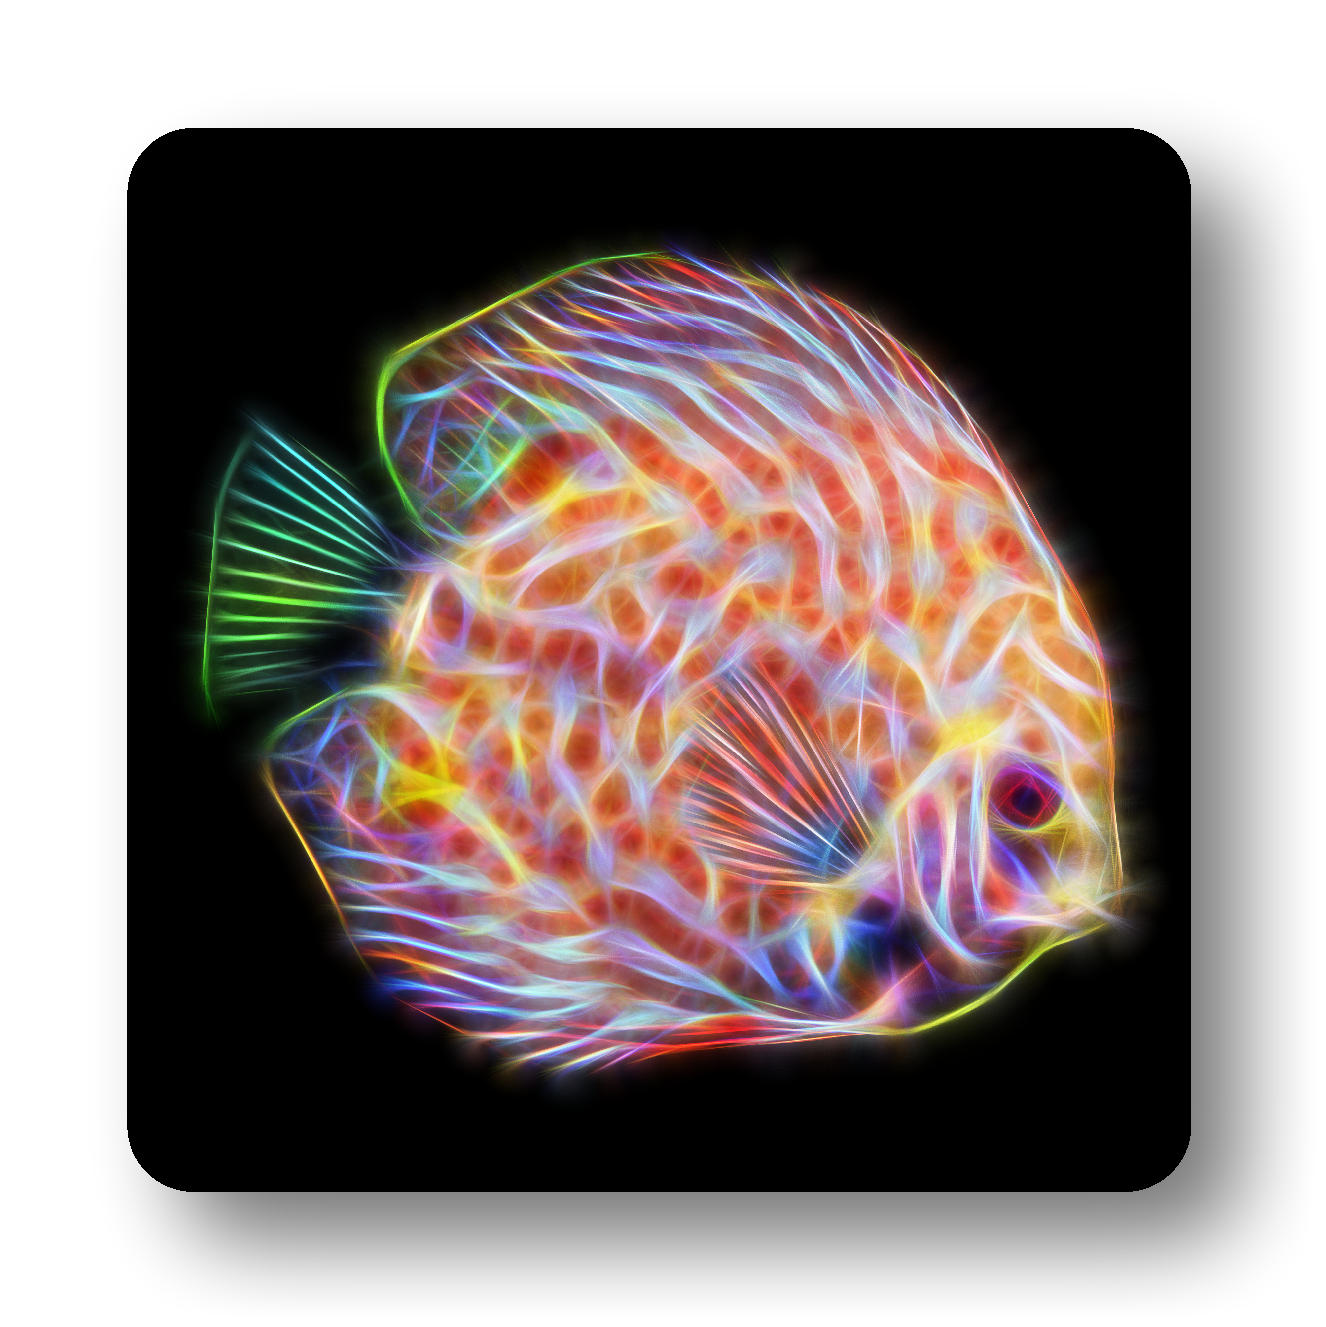 Discus Fish Coasters - Various Designs